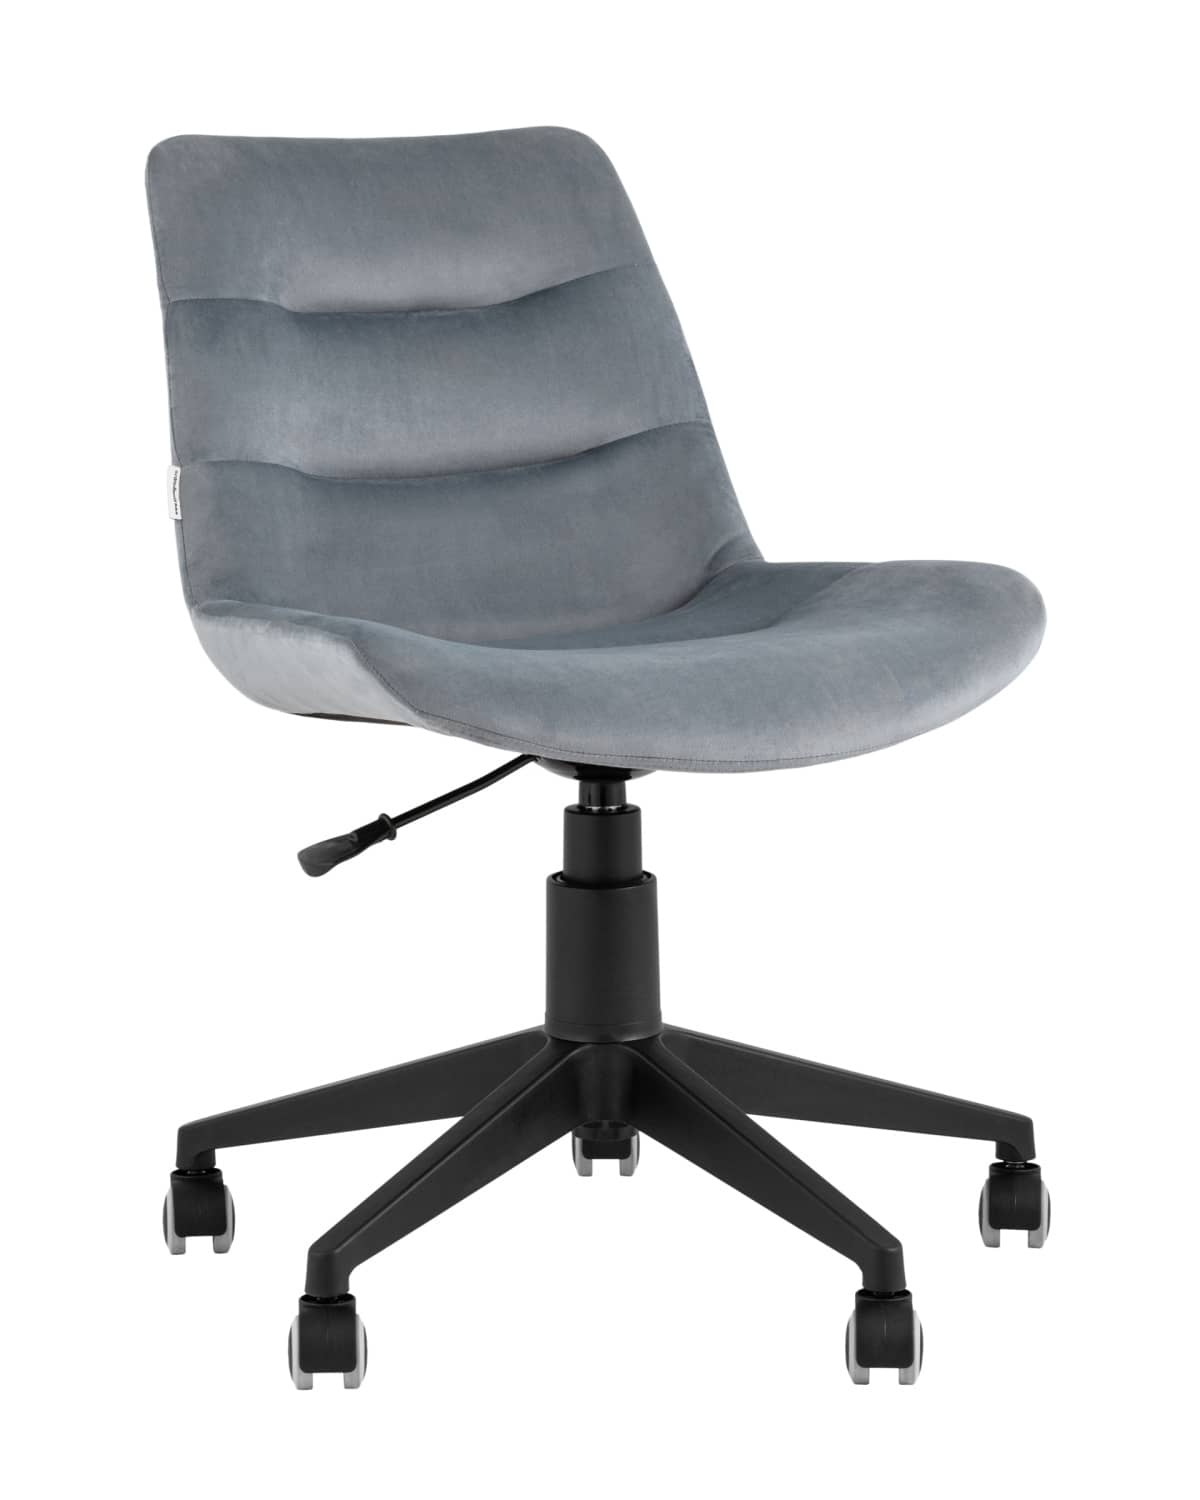 Кресло компьютерное Остин велюр серый - изображение 1